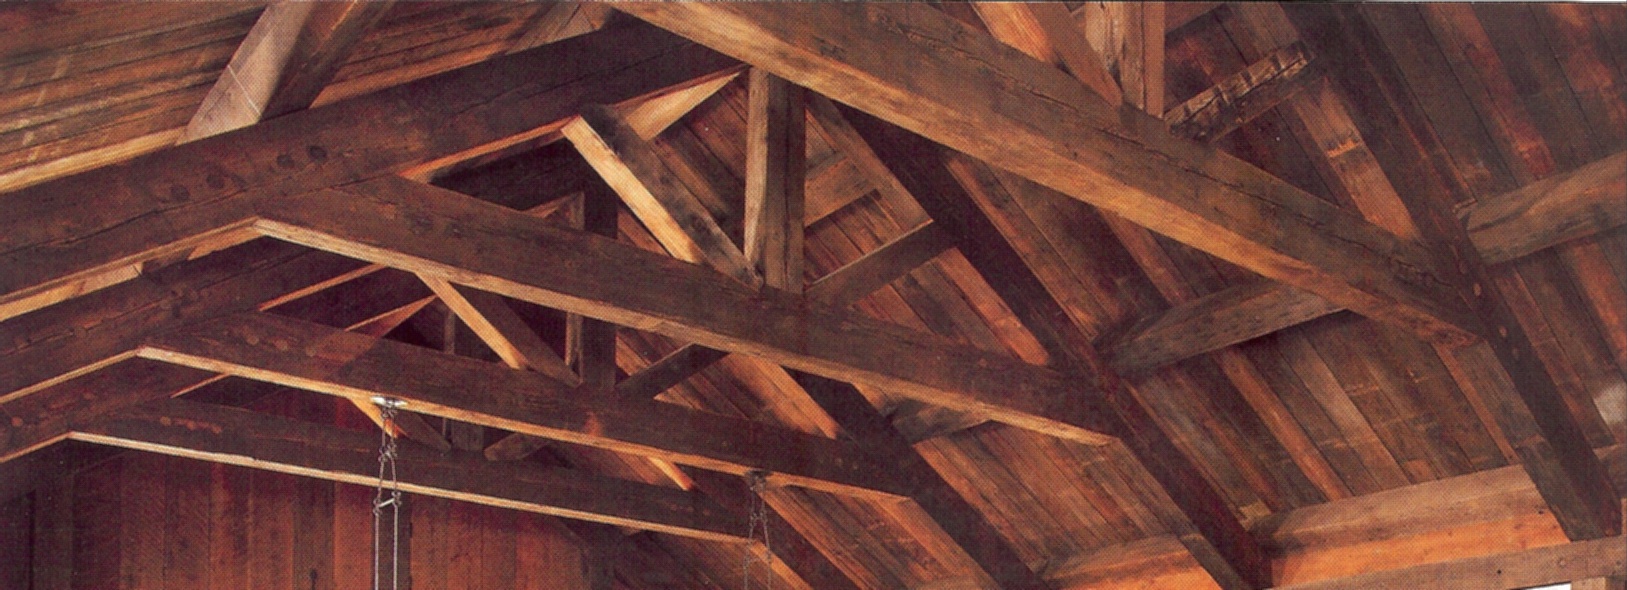 interior wood beams2